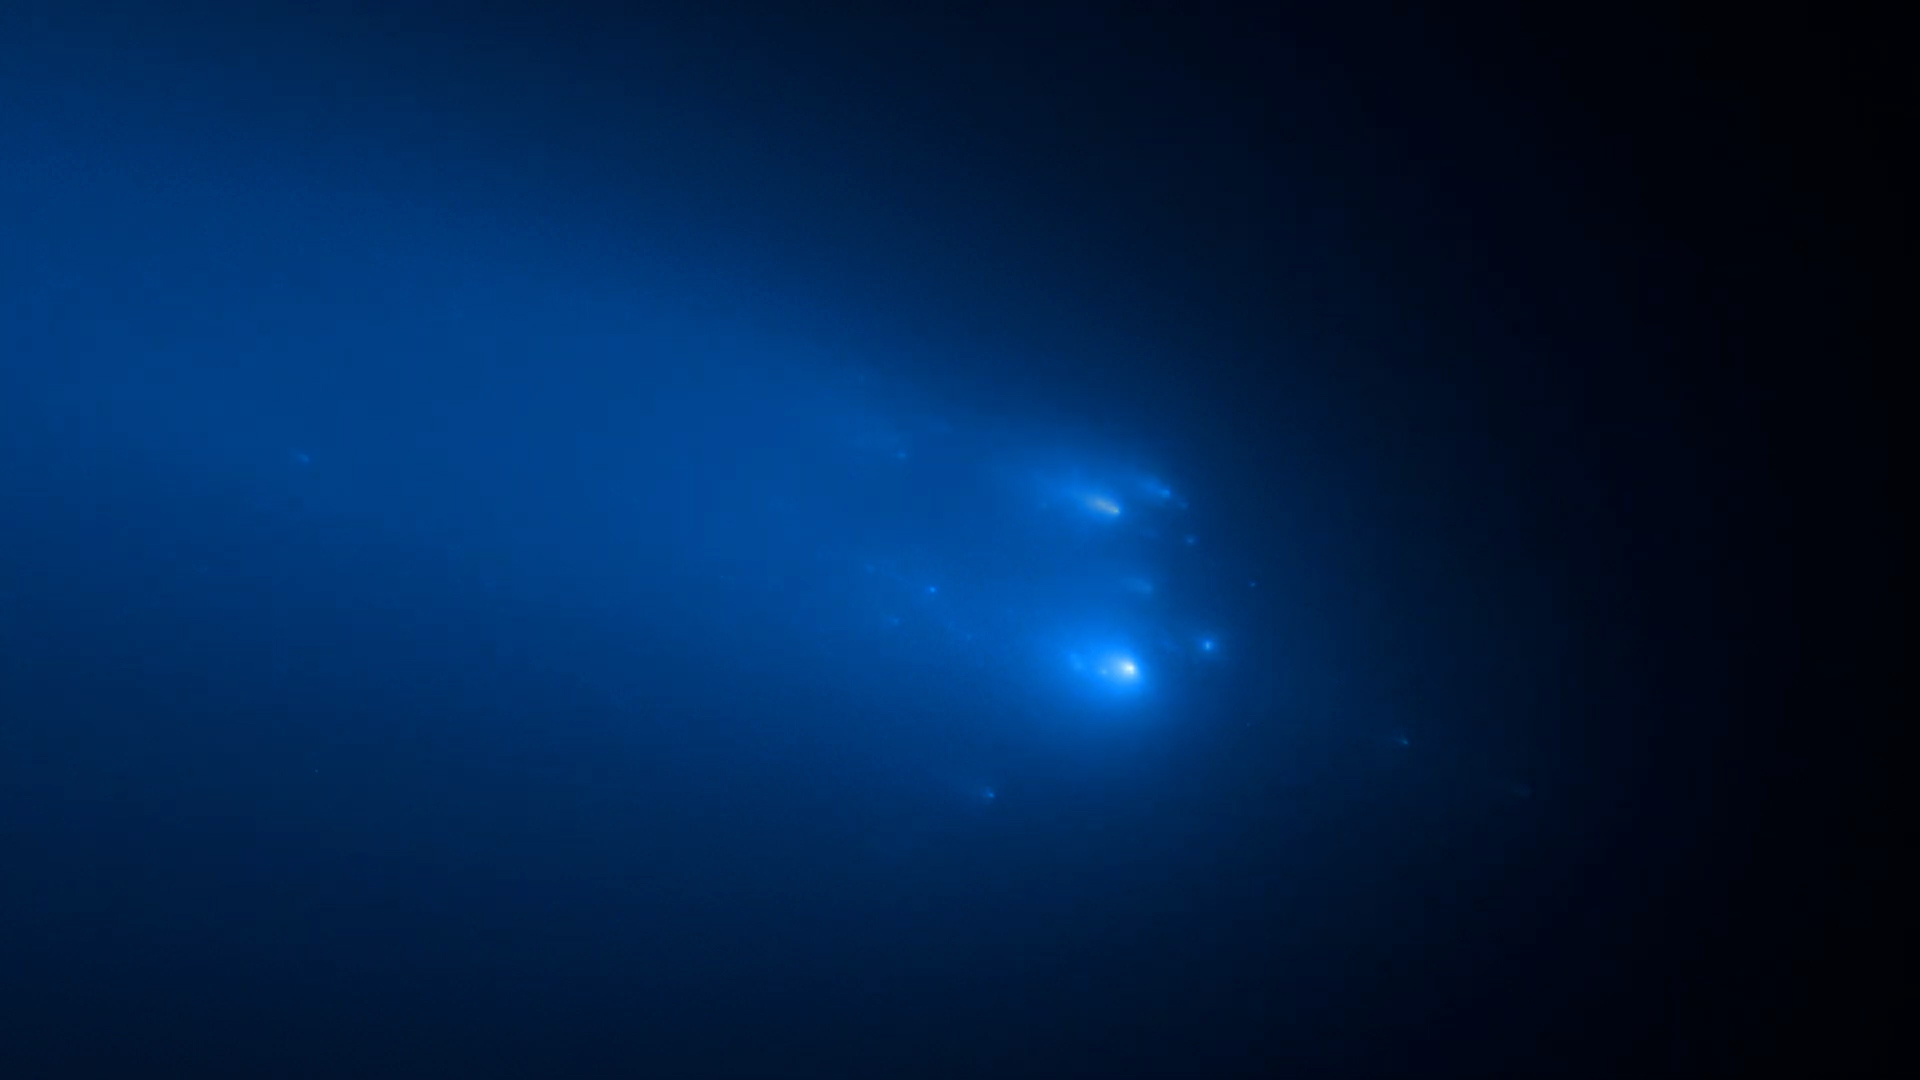 El telescopio Hubble capturó el momento exacto en el que el cometa Atlas se rompe en mil pedazos